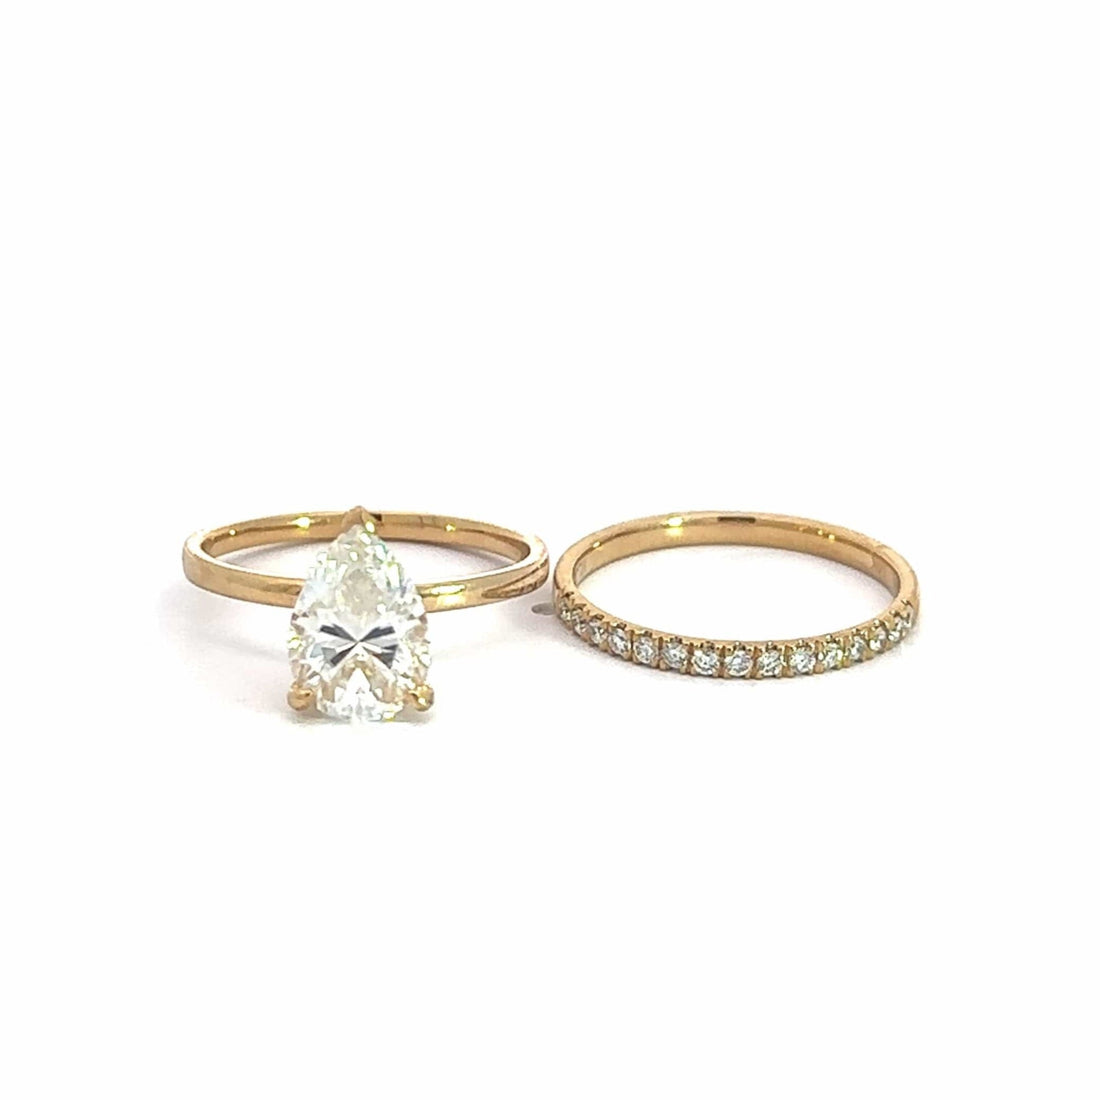 Baikalla Sterling Silver Moissanite Ring 4 Baikalla 14k Yellow Gold Pear Moissanite Diamond 2 in 1 Engagement Ring Set